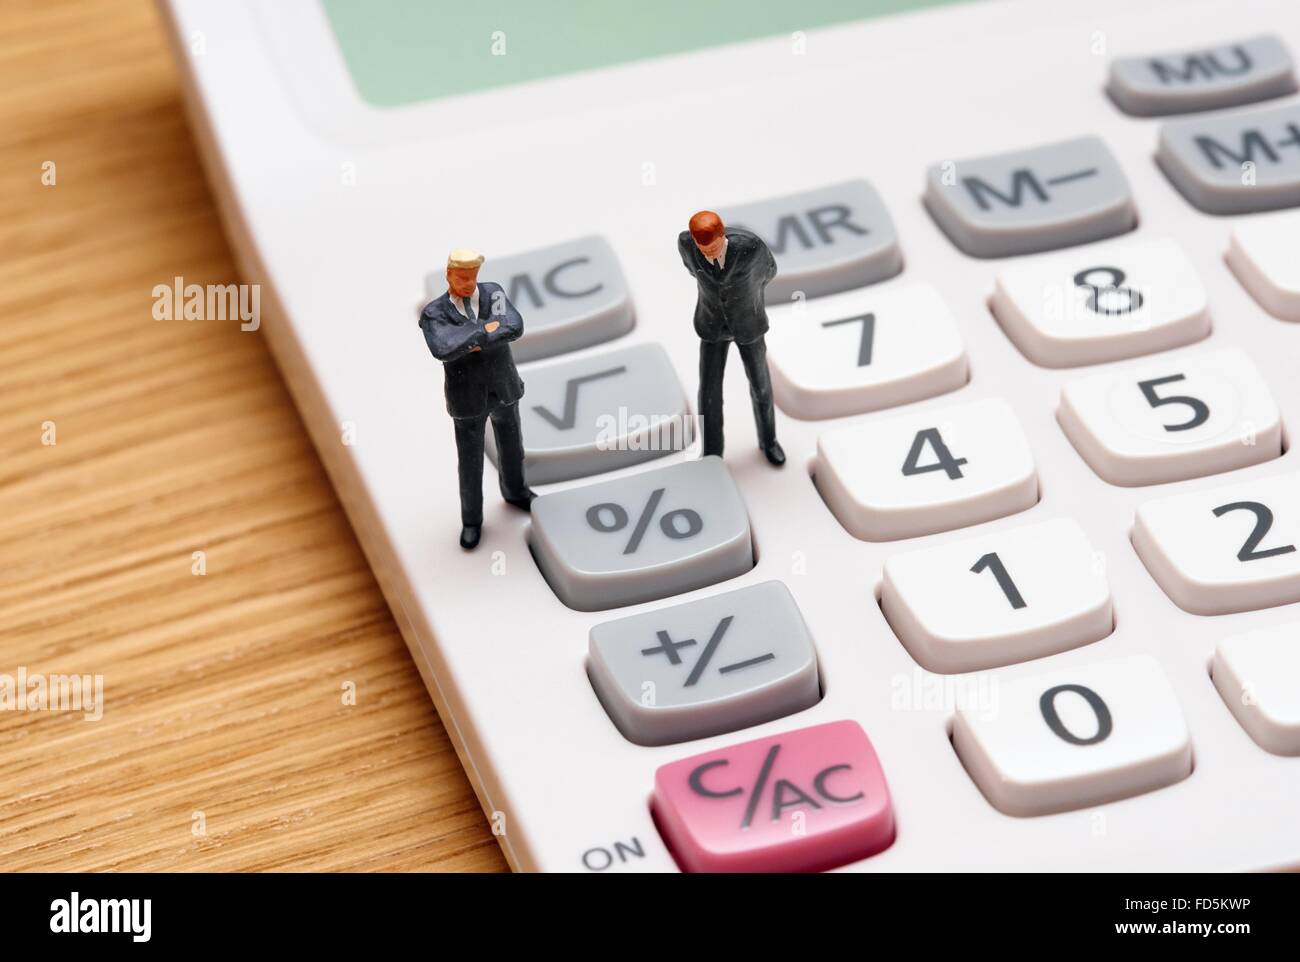 Figurine miniature en costumes hommes debout sur une calculatrice Banque D'Images